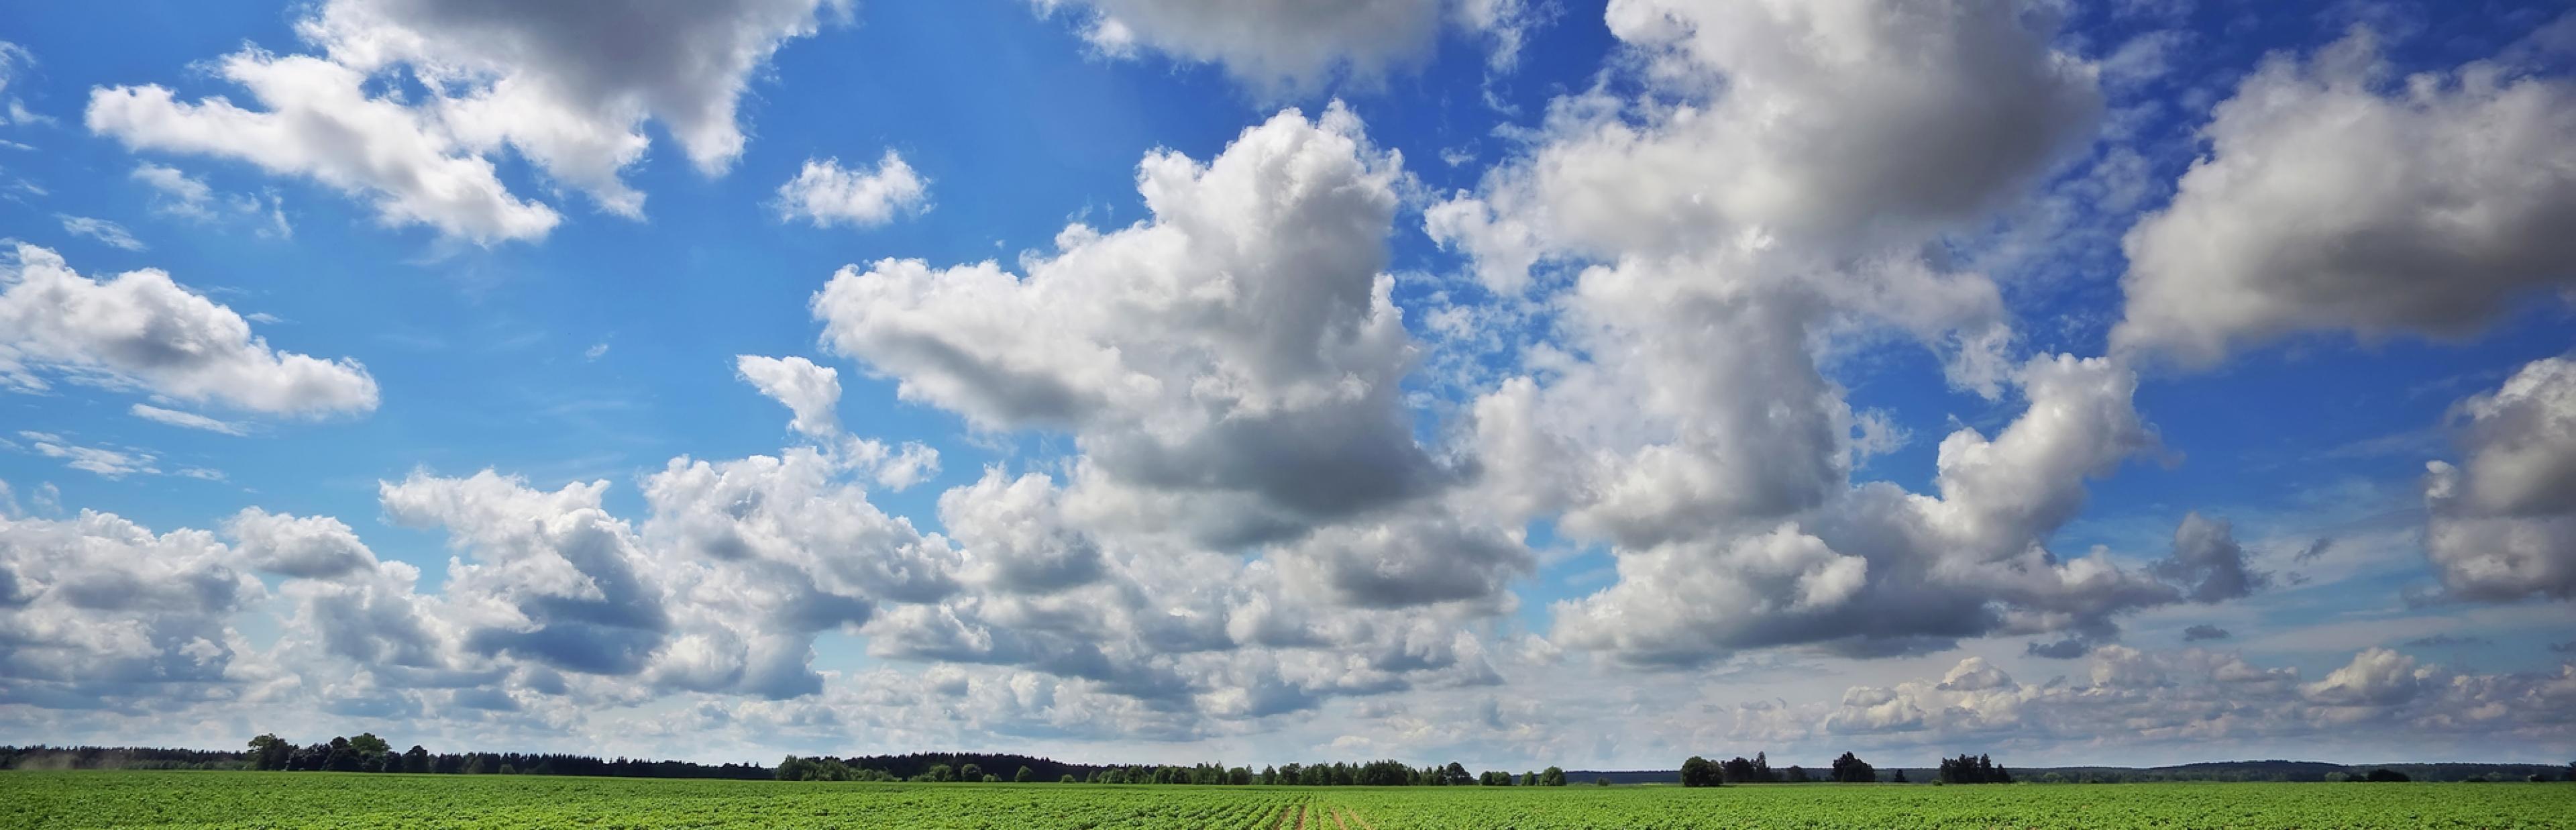 Riesiges Feld mit in Reihe gesetzten Kartoffelpflanzen, darüber ein blauer Himmel mit einzelnen Wolken